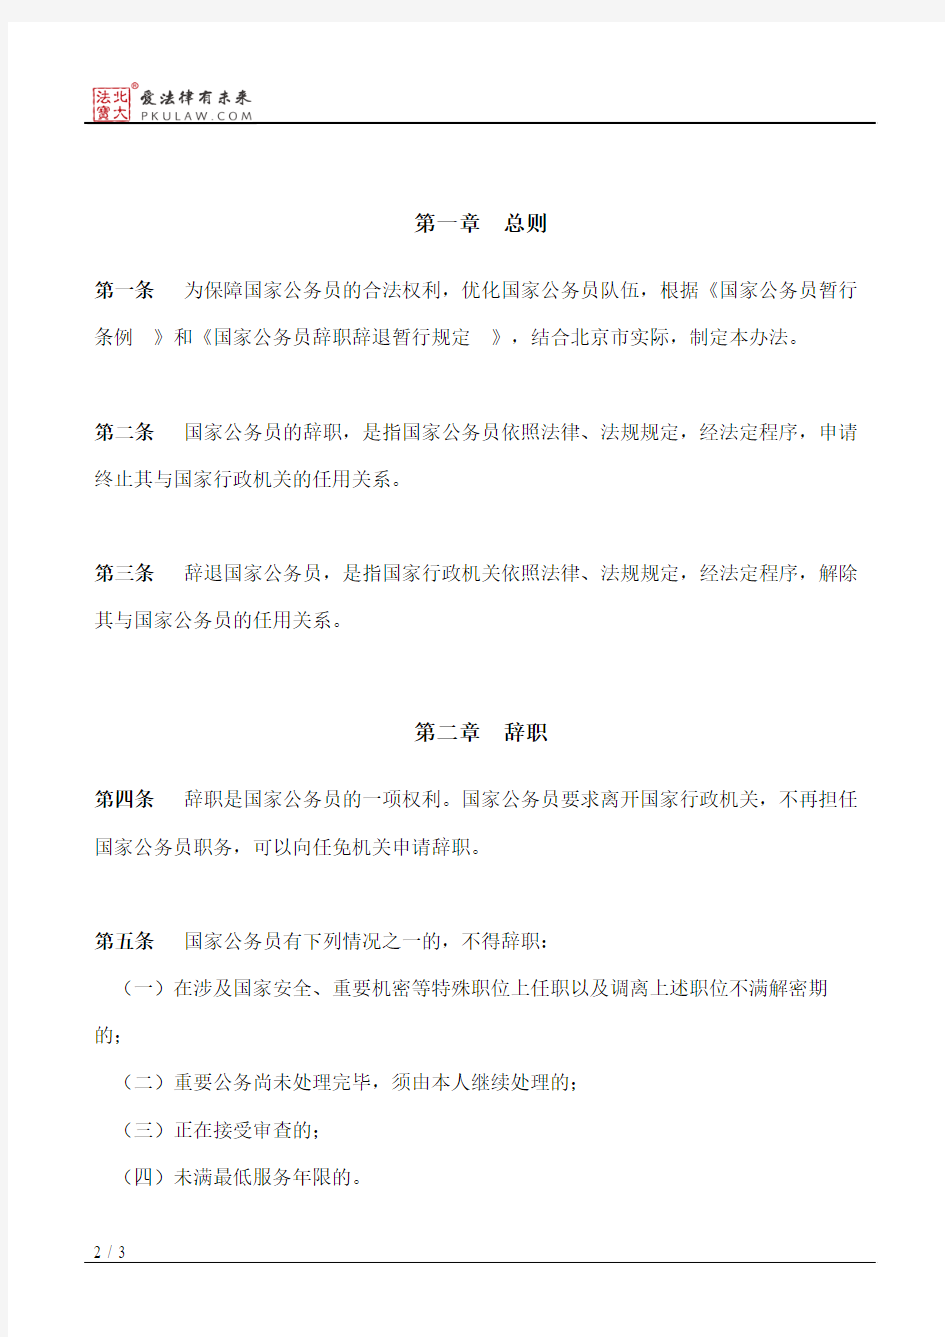 北京市人民政府办公厅关于印发《北京市国家公务员辞职辞退暂行办